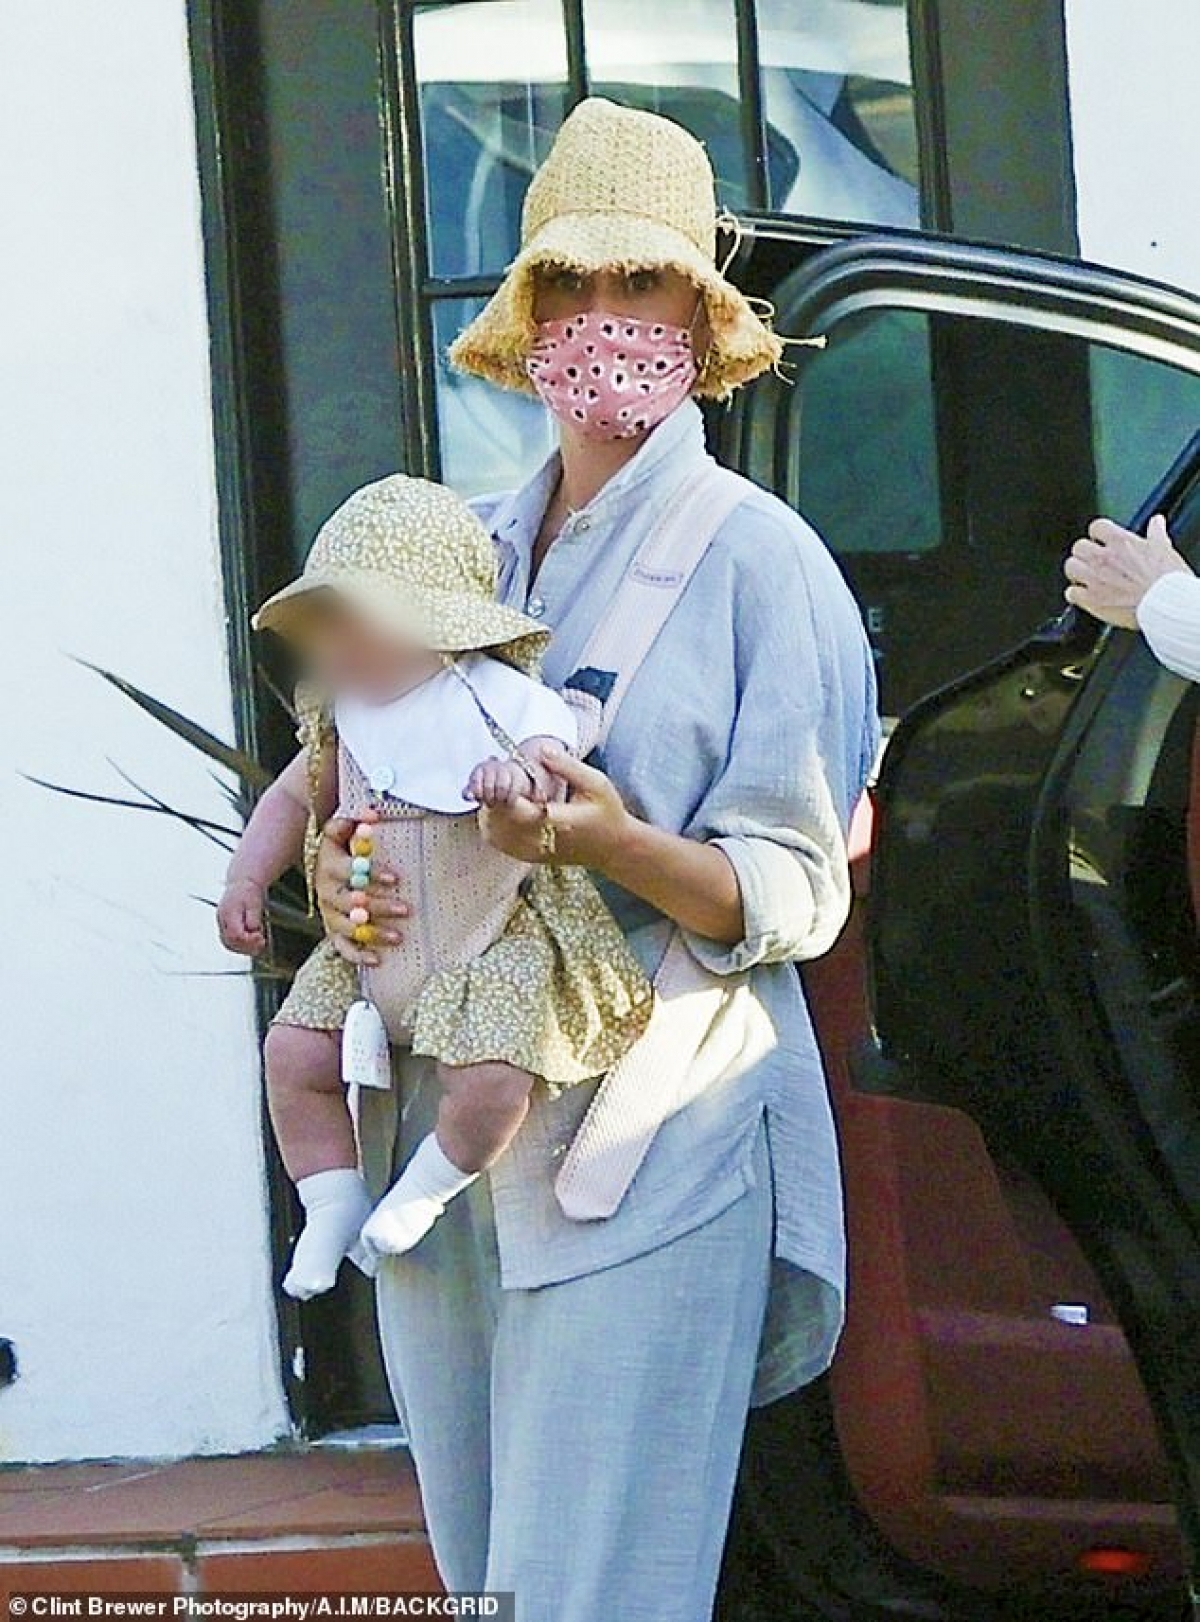 Katy Perry mặc bộ đồ giản dị địu con gái cưng ra phố dạo chơi - Ảnh 2.